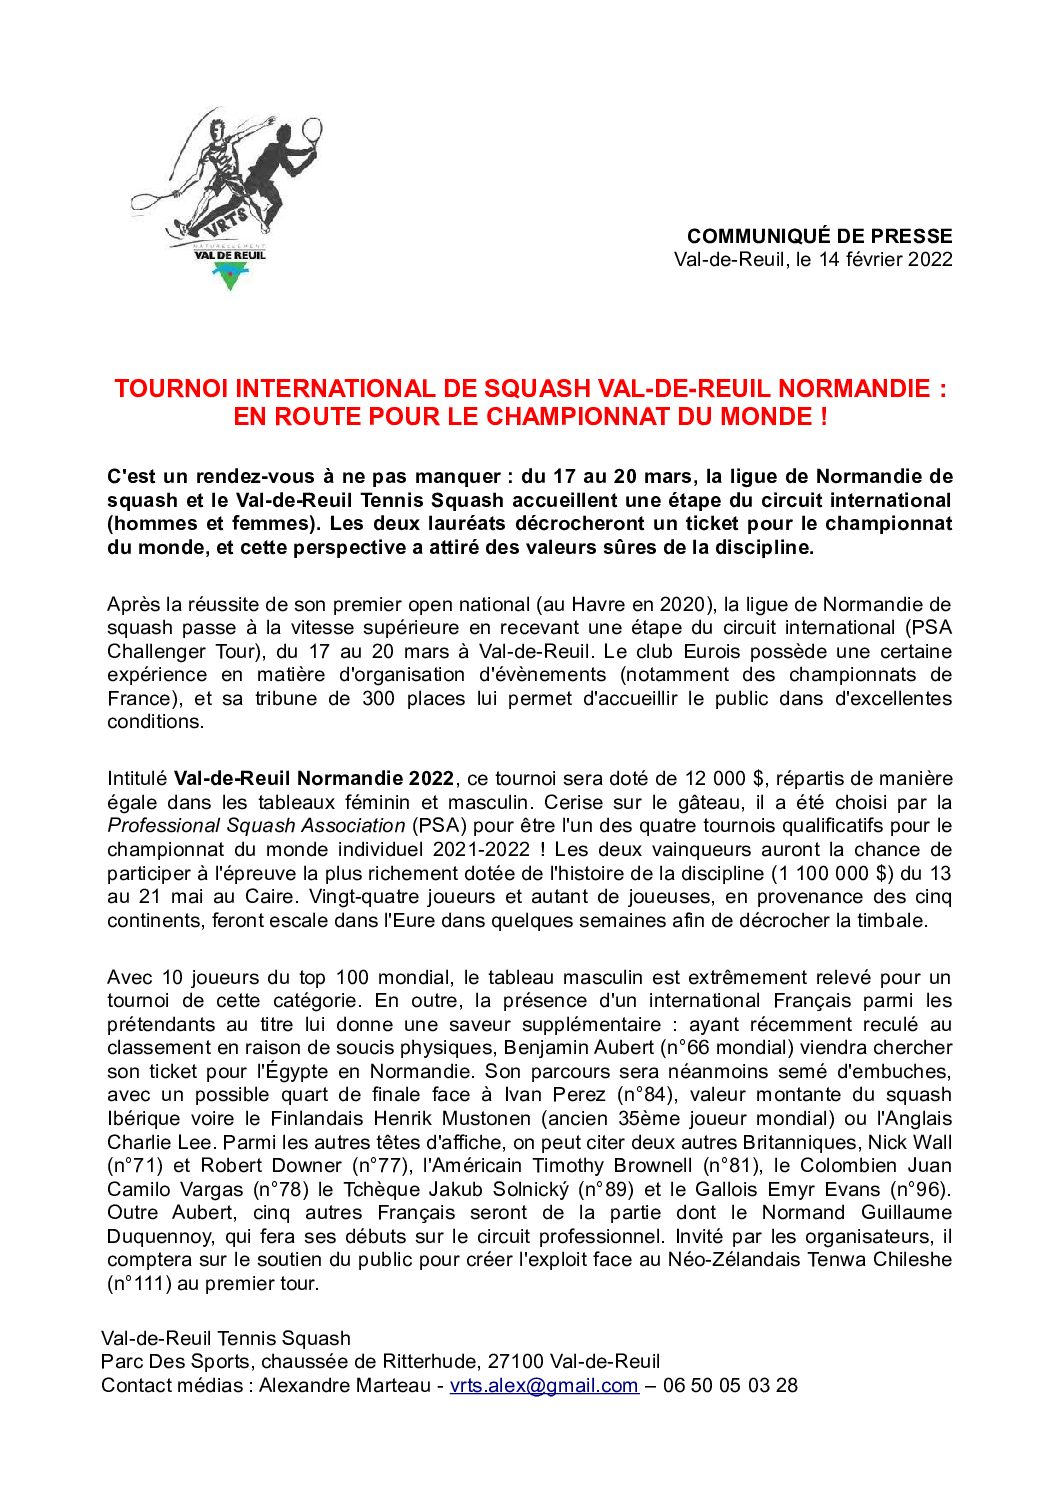 Communiqué de Presse PSA de Normandie Val de Reuil Mars 2022